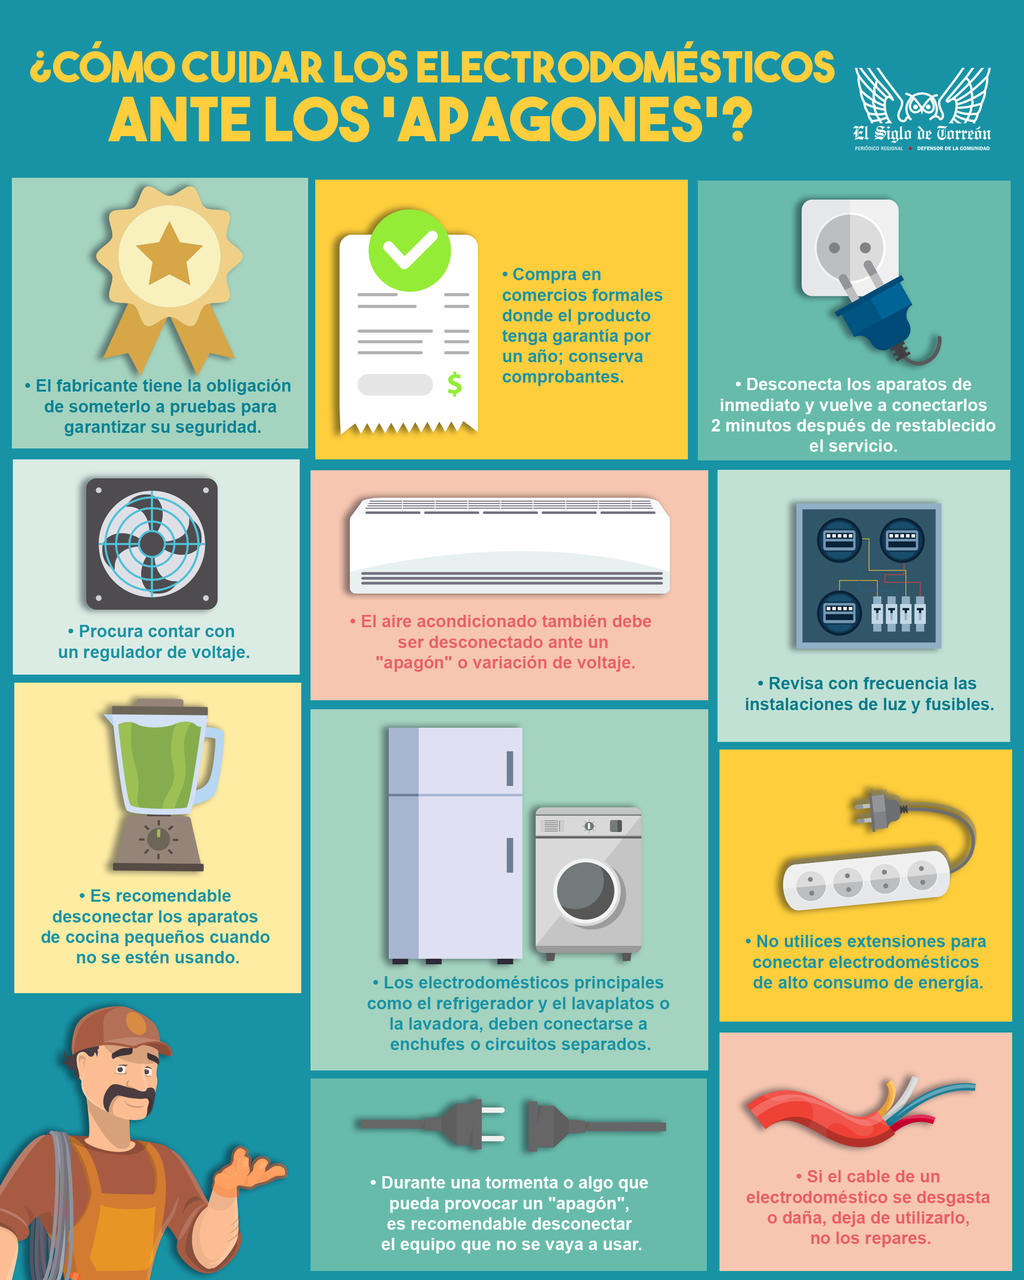 Consejos para cuidar los electrodomésticos ante 'apagones'